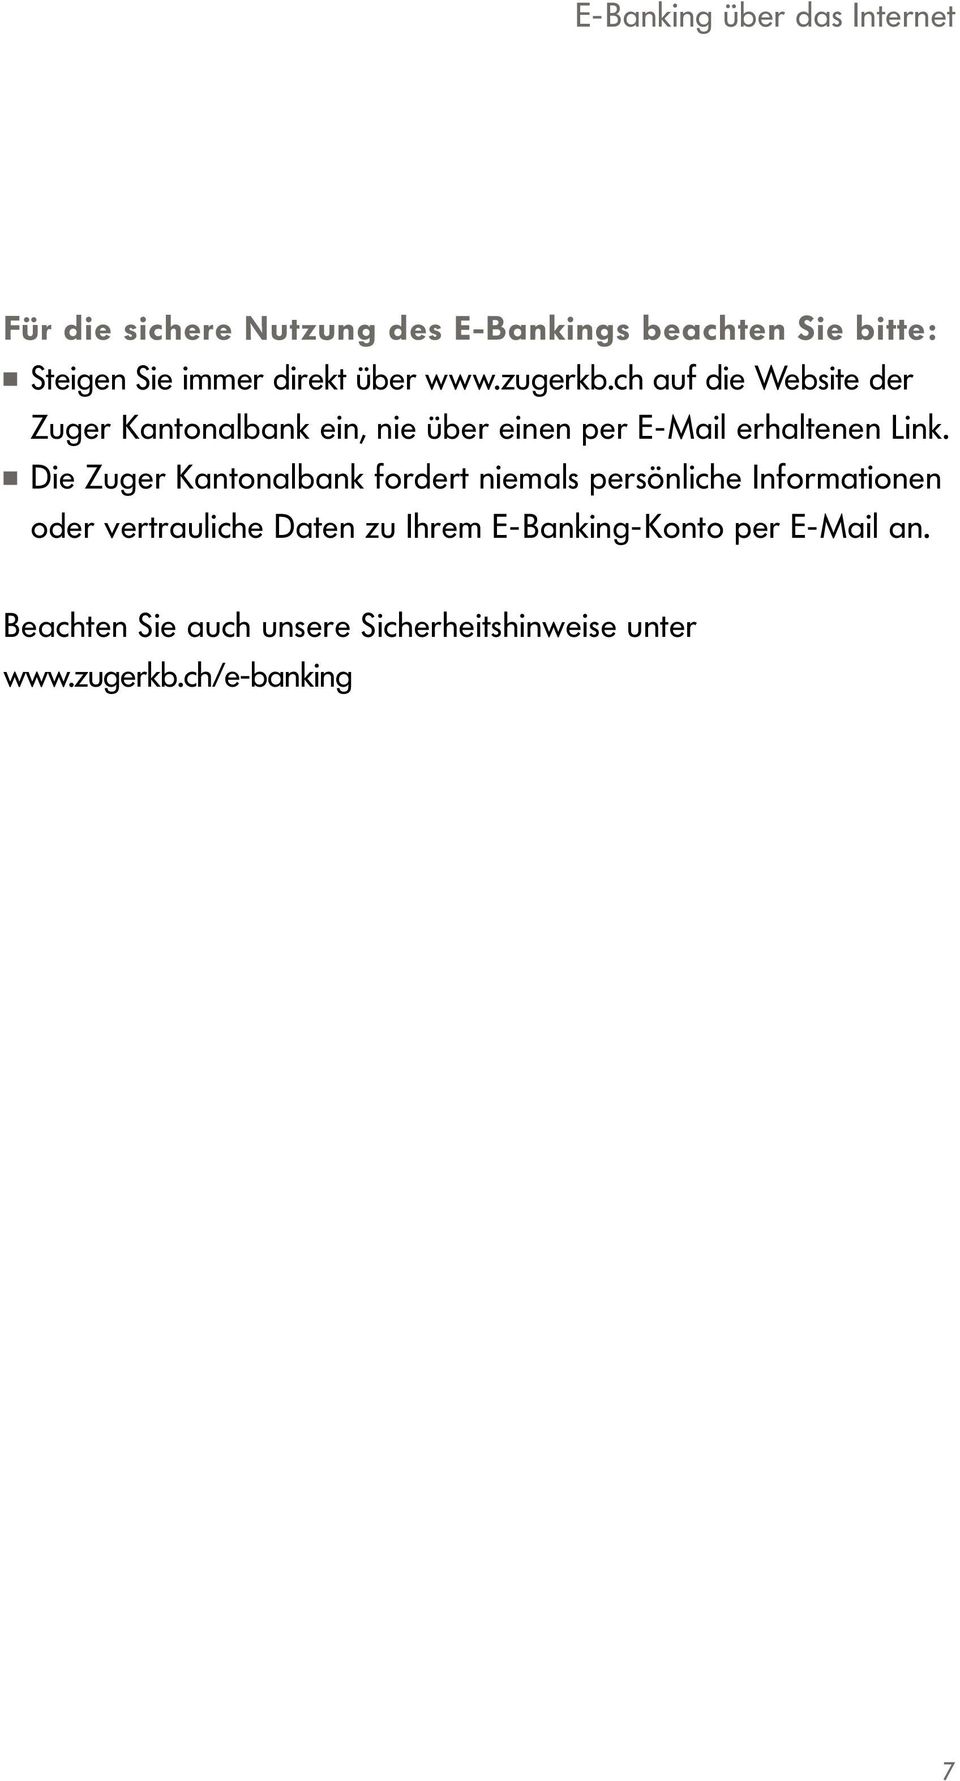 ch auf die Website der Zuger Kantonalbank ein, nie über einen per E-Mail erhaltenen Link.